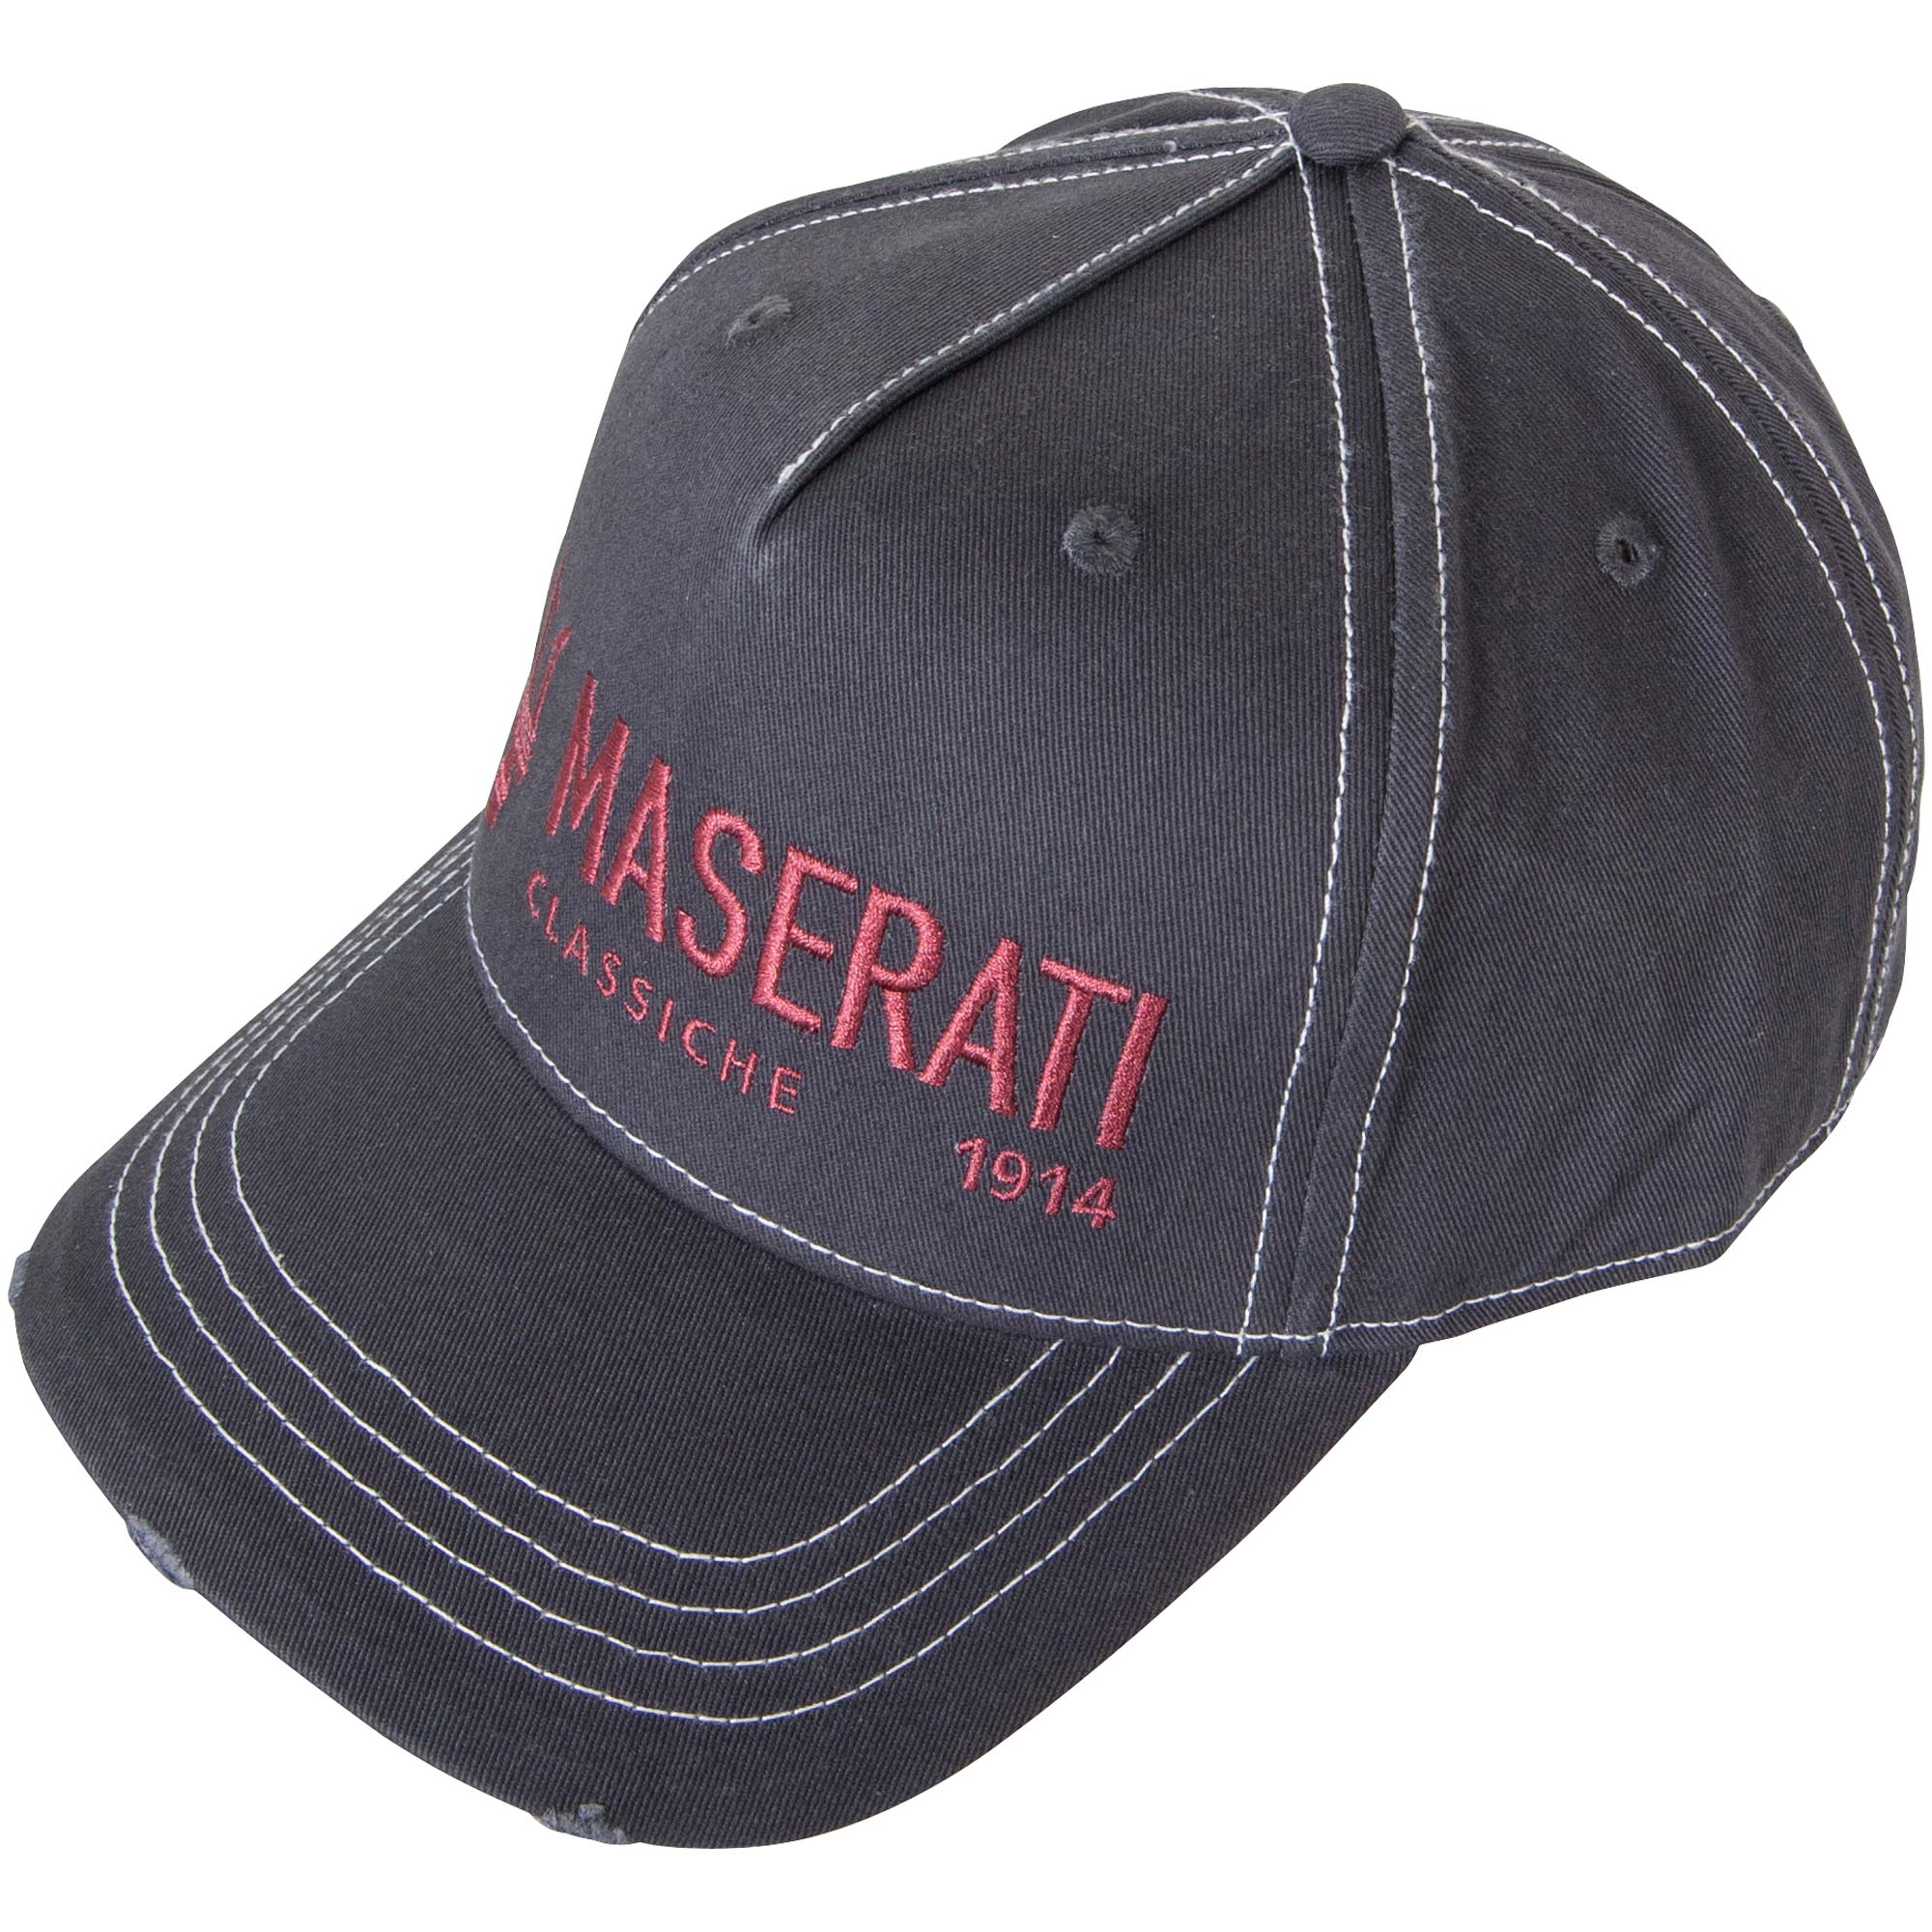 Maserati Classiche cap "Lifestyle" - grey